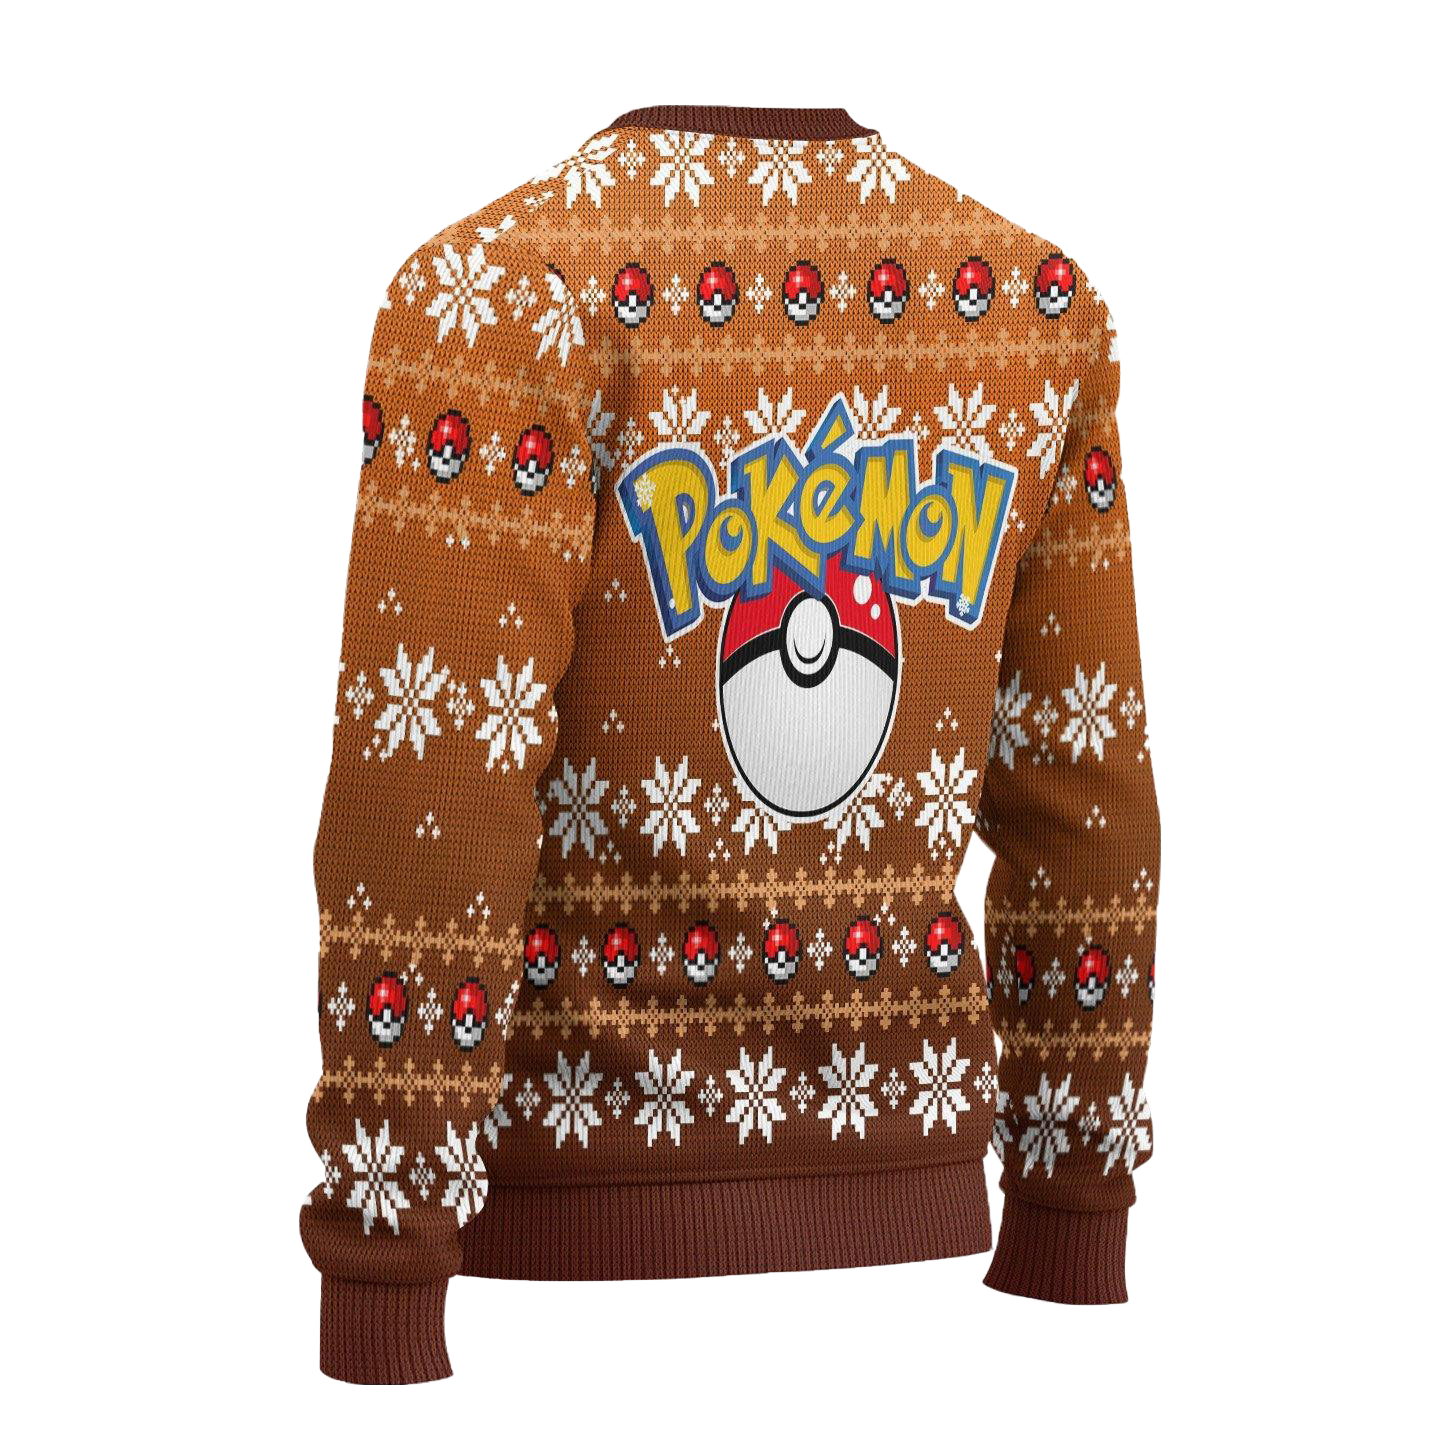 Pokemon Eevee Anime Ugly Christmas Sweater Xmas Gift